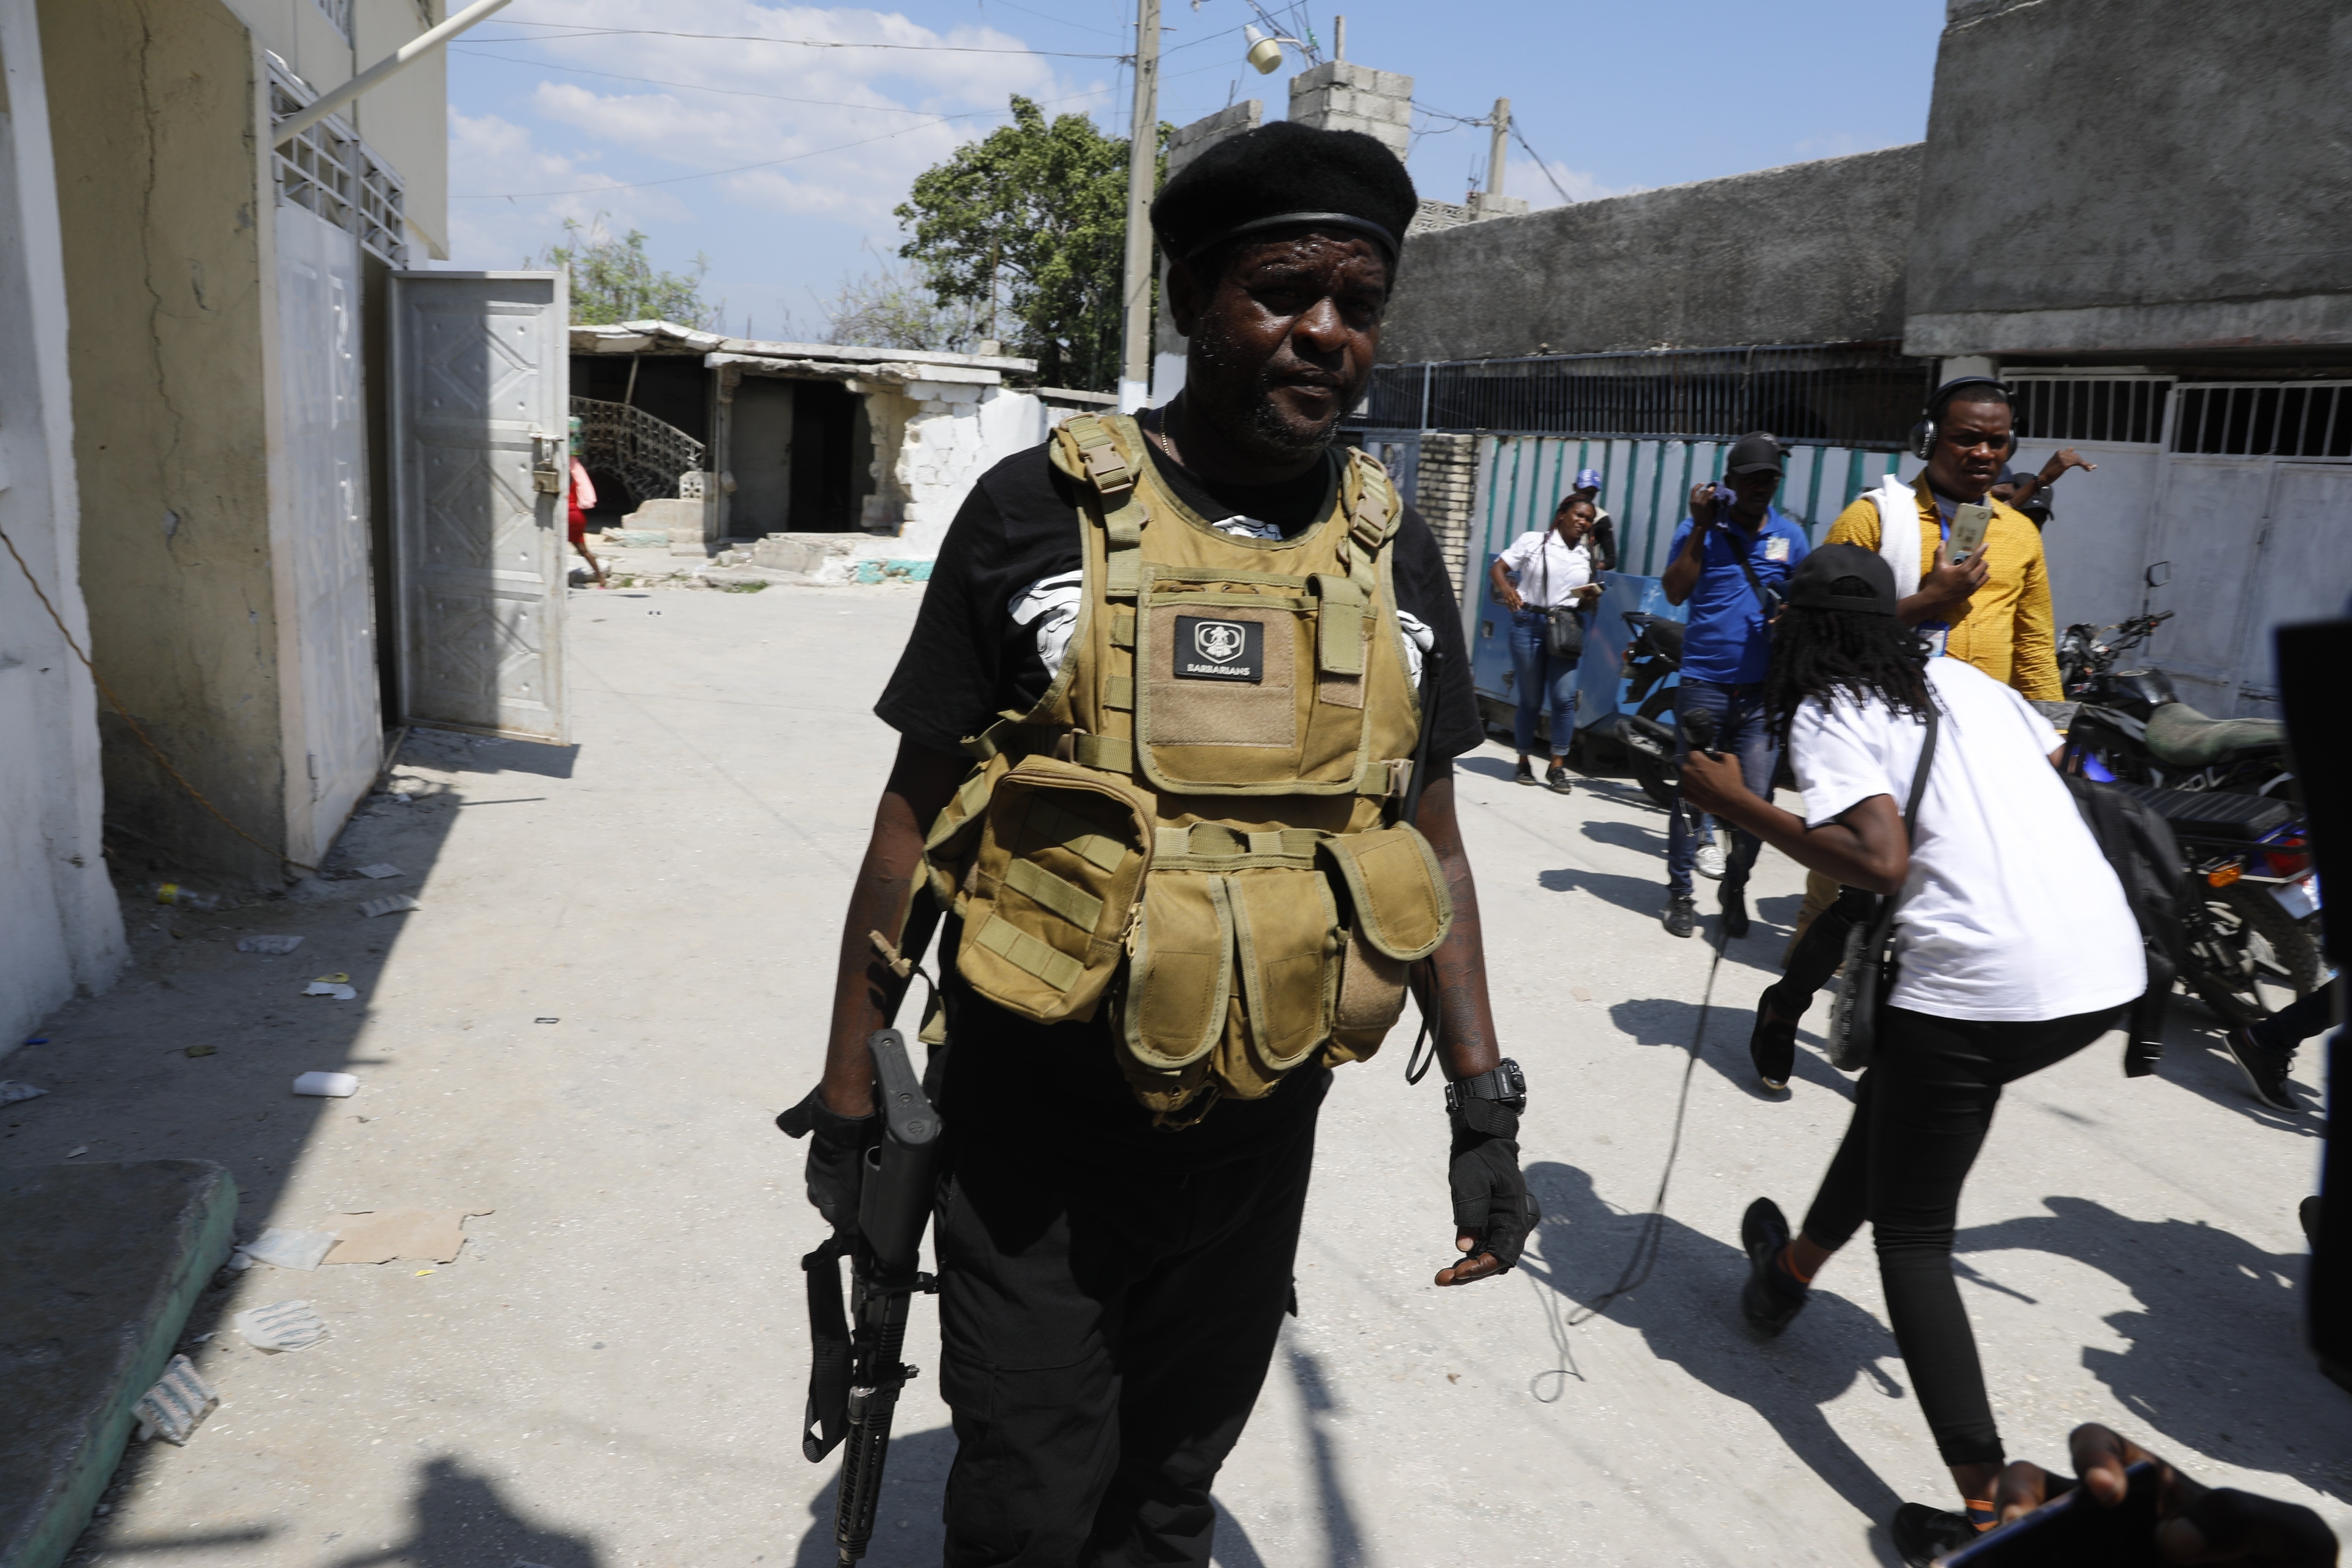 ‘바비큐’로 불리는 아이티 무장단체 두목 지미 셰리지에가 11일(현지시간) 수도 포르토프랭스에서 아리엘 앙리 총리의 퇴진을 요구하는 회견을 한 뒤 본거지로 돌아가고 있다. 포르토프랭스 AP 뉴시스